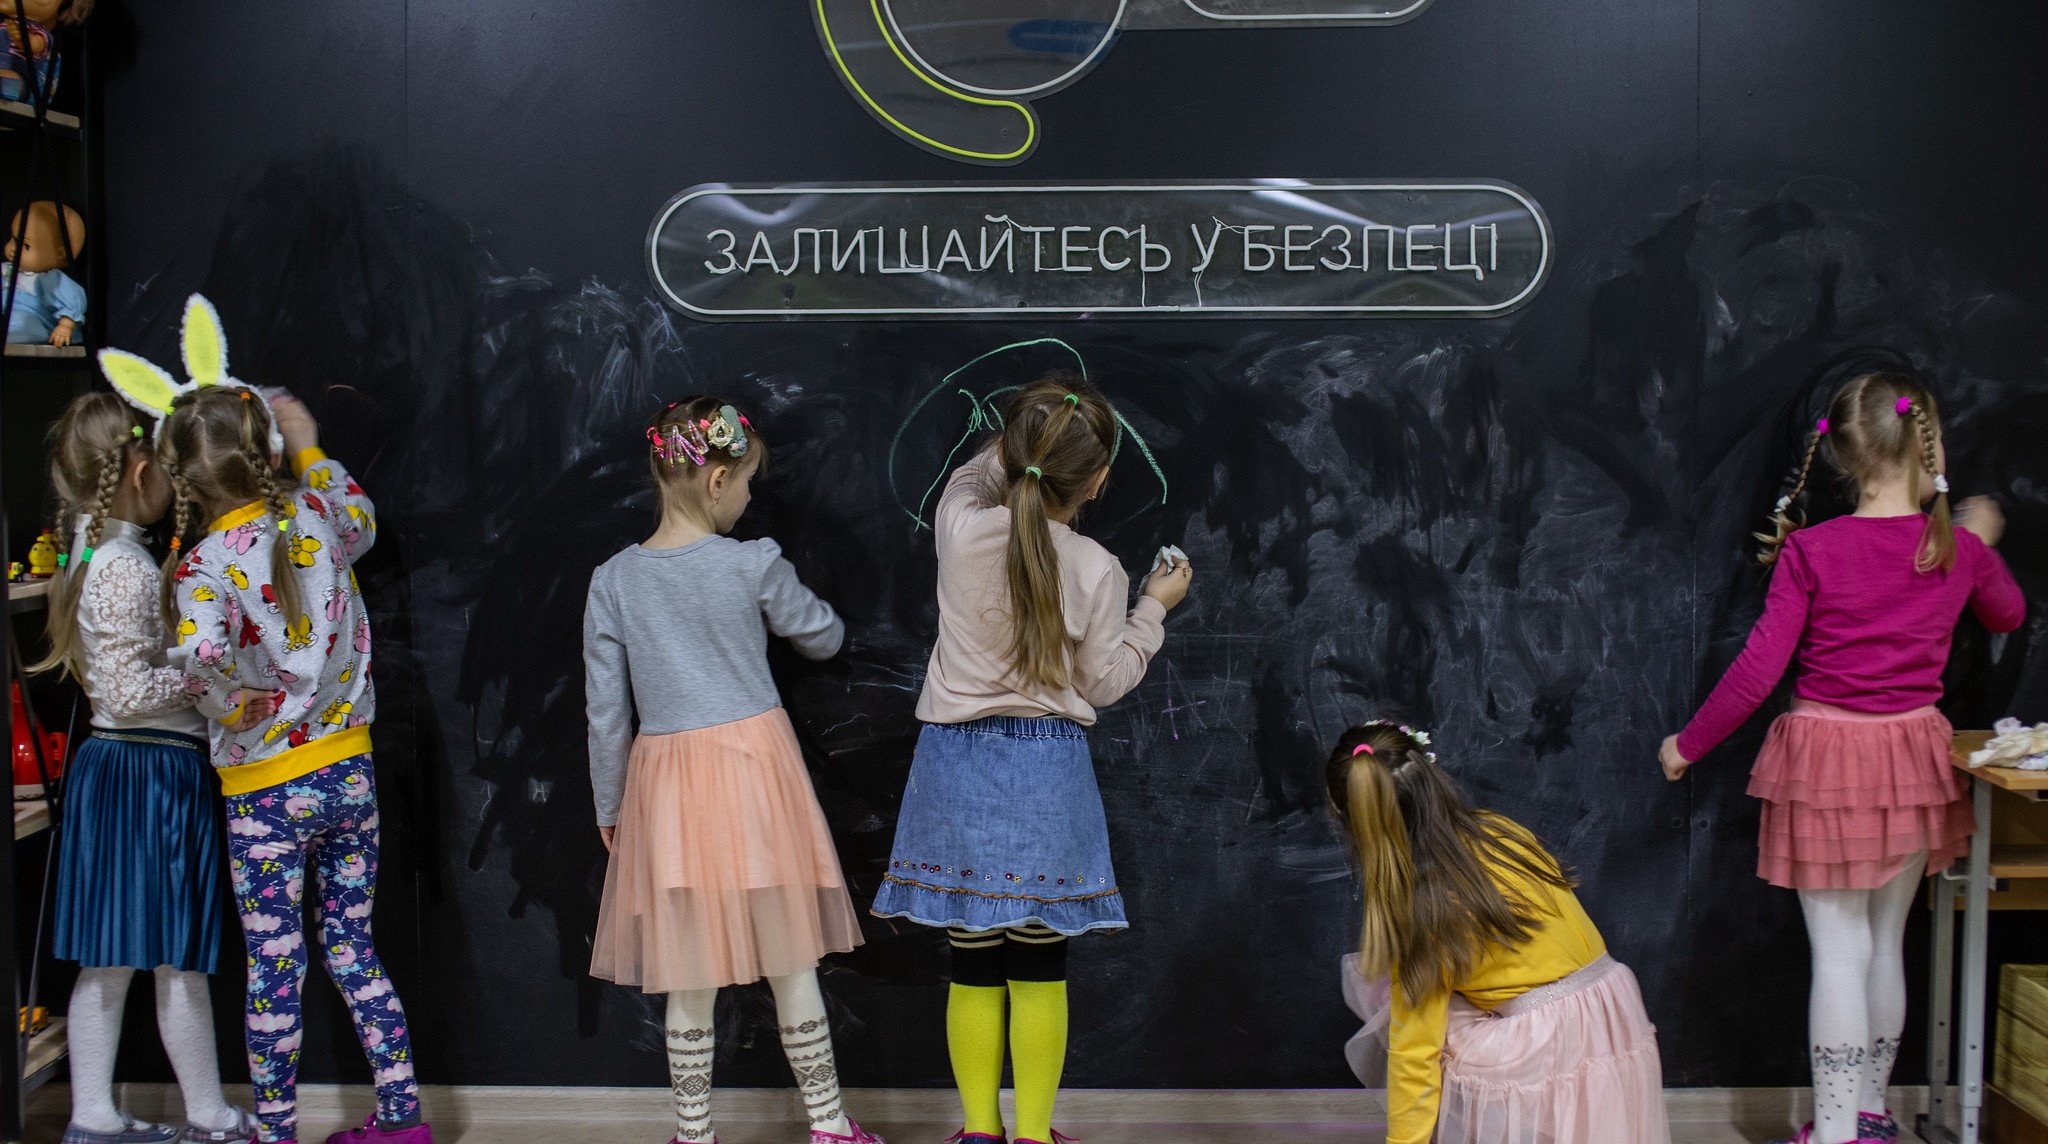 Polski parlament zgodził się na powiązanie zasiłków na dzieci dla ukraińskich uchodźców z zapisami do szkoły